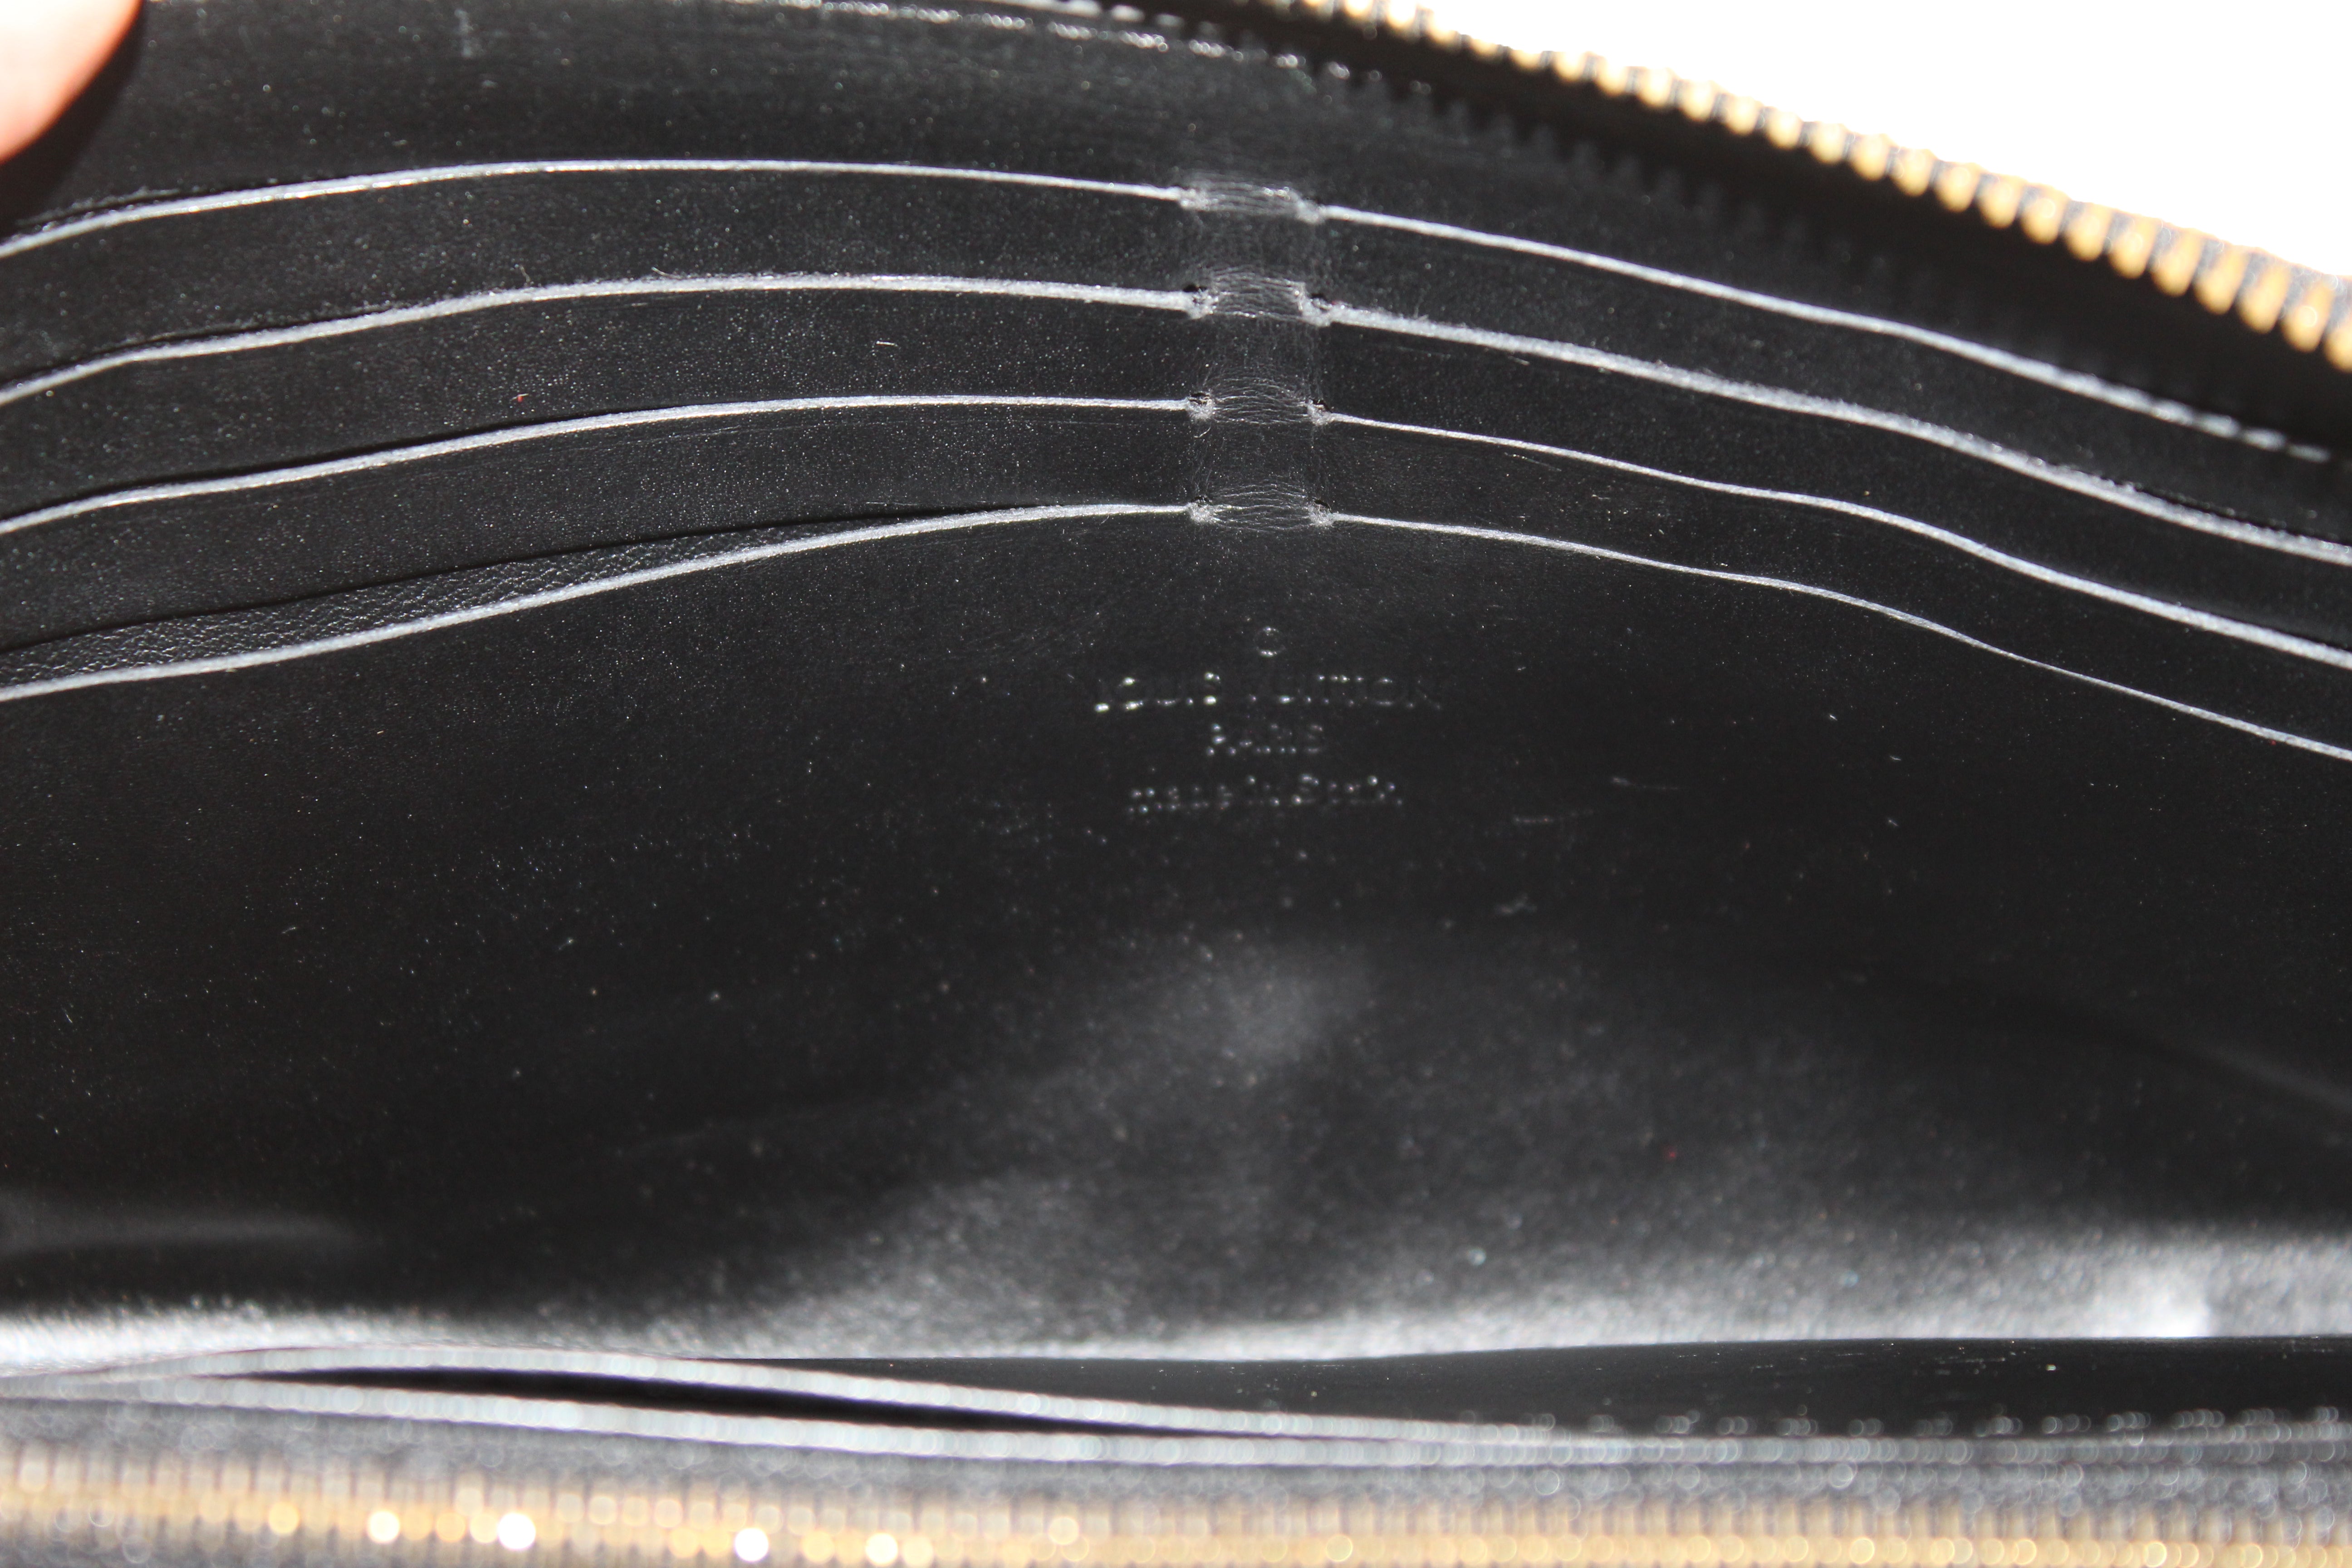 Authentic Louis Vuitton Black Suhali Leather Zippy Wallet